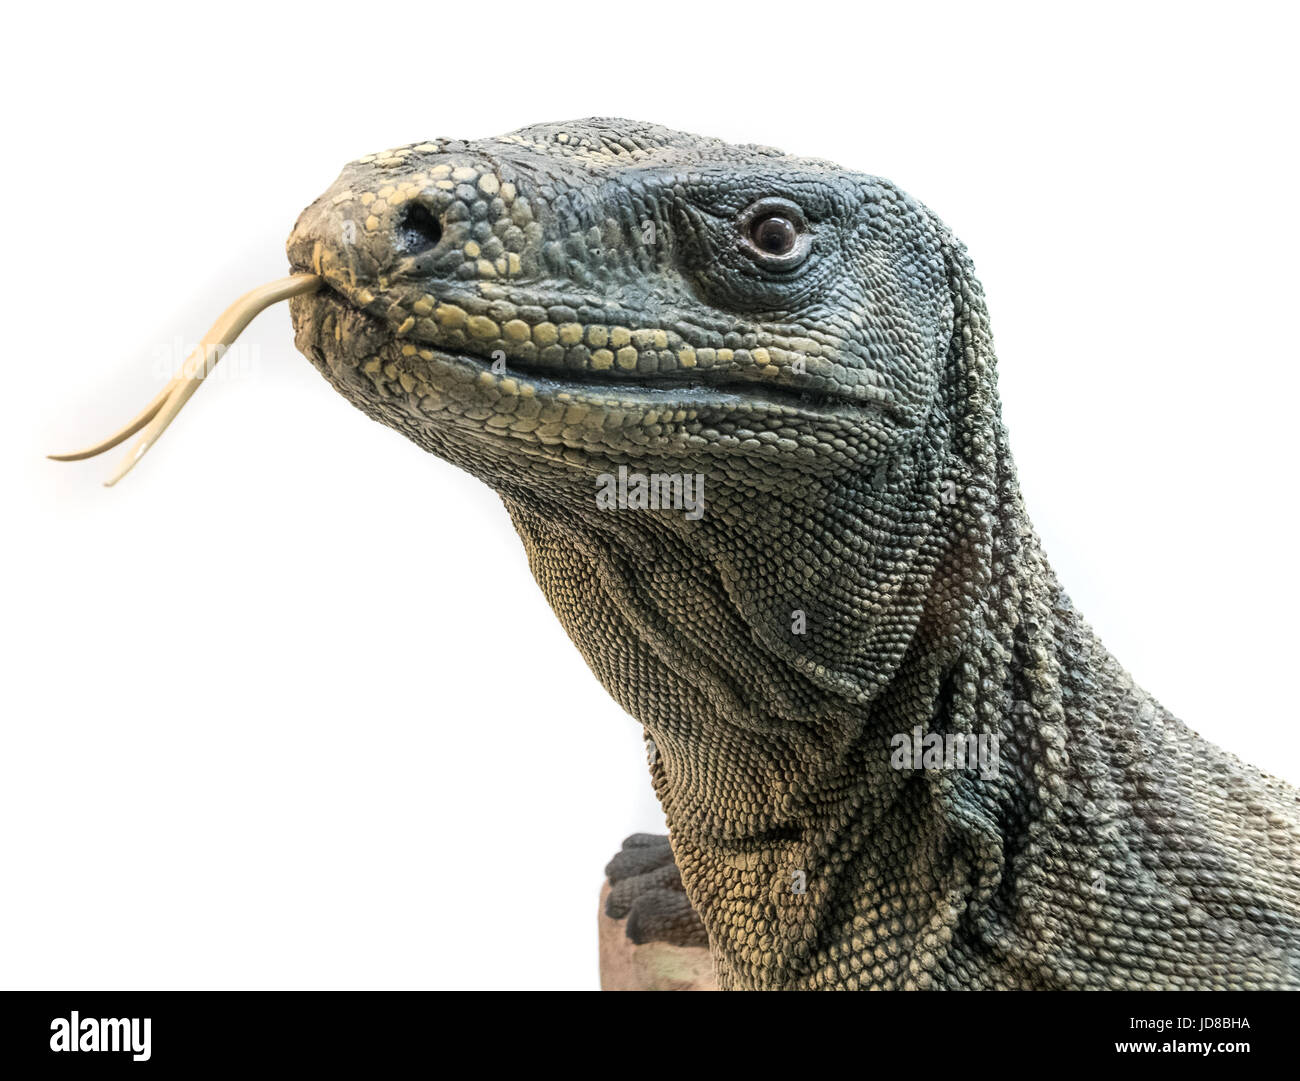 Ritratto di una lucertola di testa con linguetta sporgente, studio shot. animali impagliati isolato immagine a colori Foto Stock